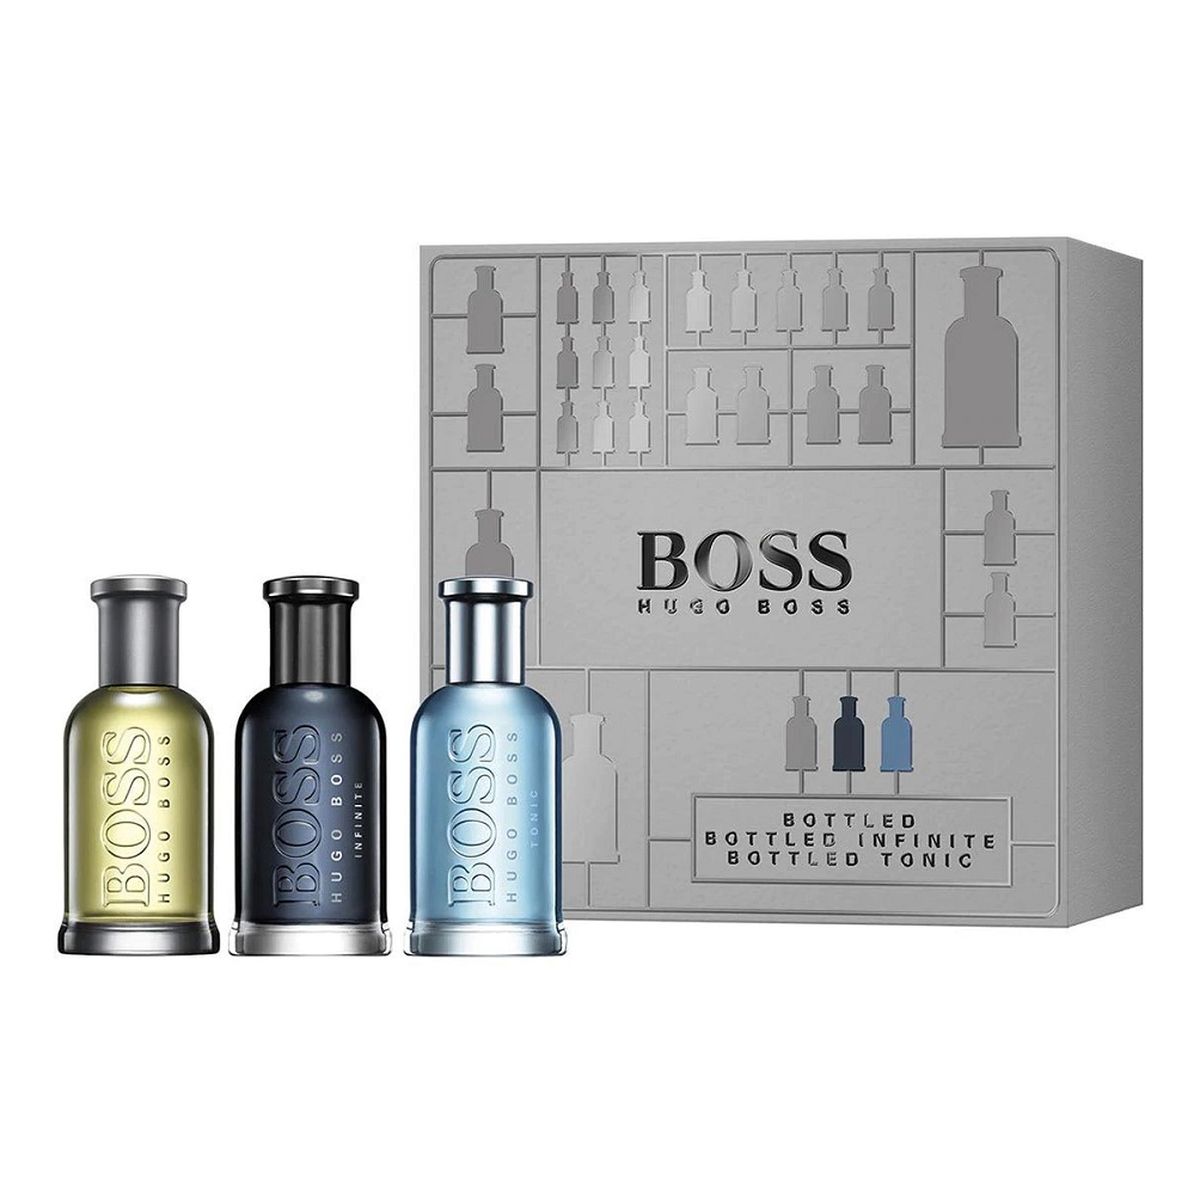 Hugo Boss Bottled Collection Zestaw bottled woda toaletowa spray 30ml + boss infinite woda perfumowana spray 30ml + bottled tonic woda toaletowa spray 30ml